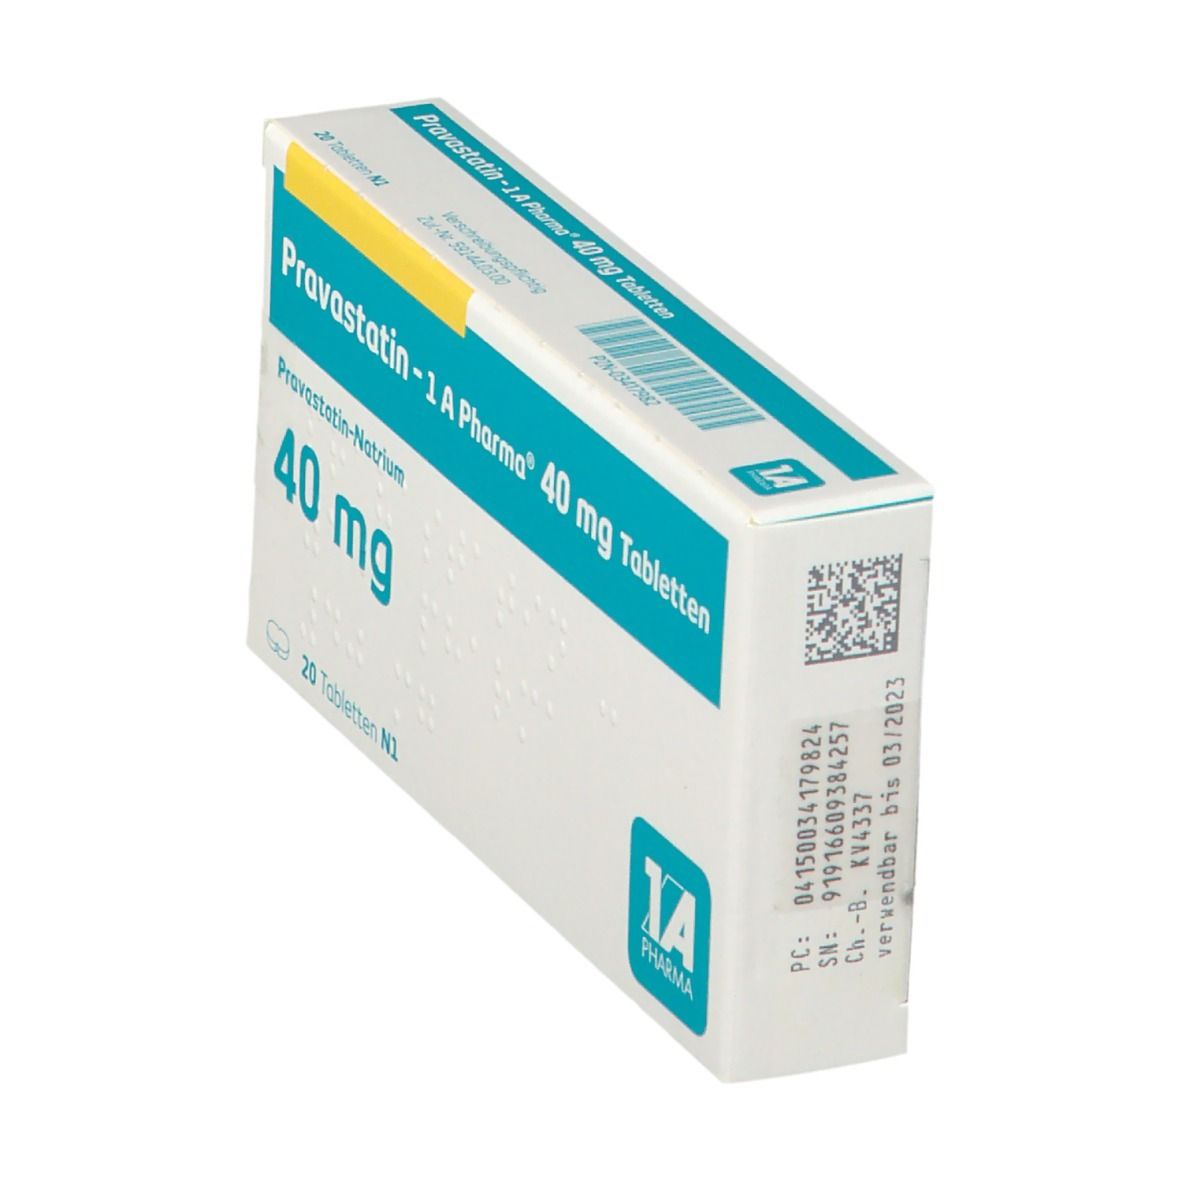 Pravastatin 1A Pharma® 40Mg